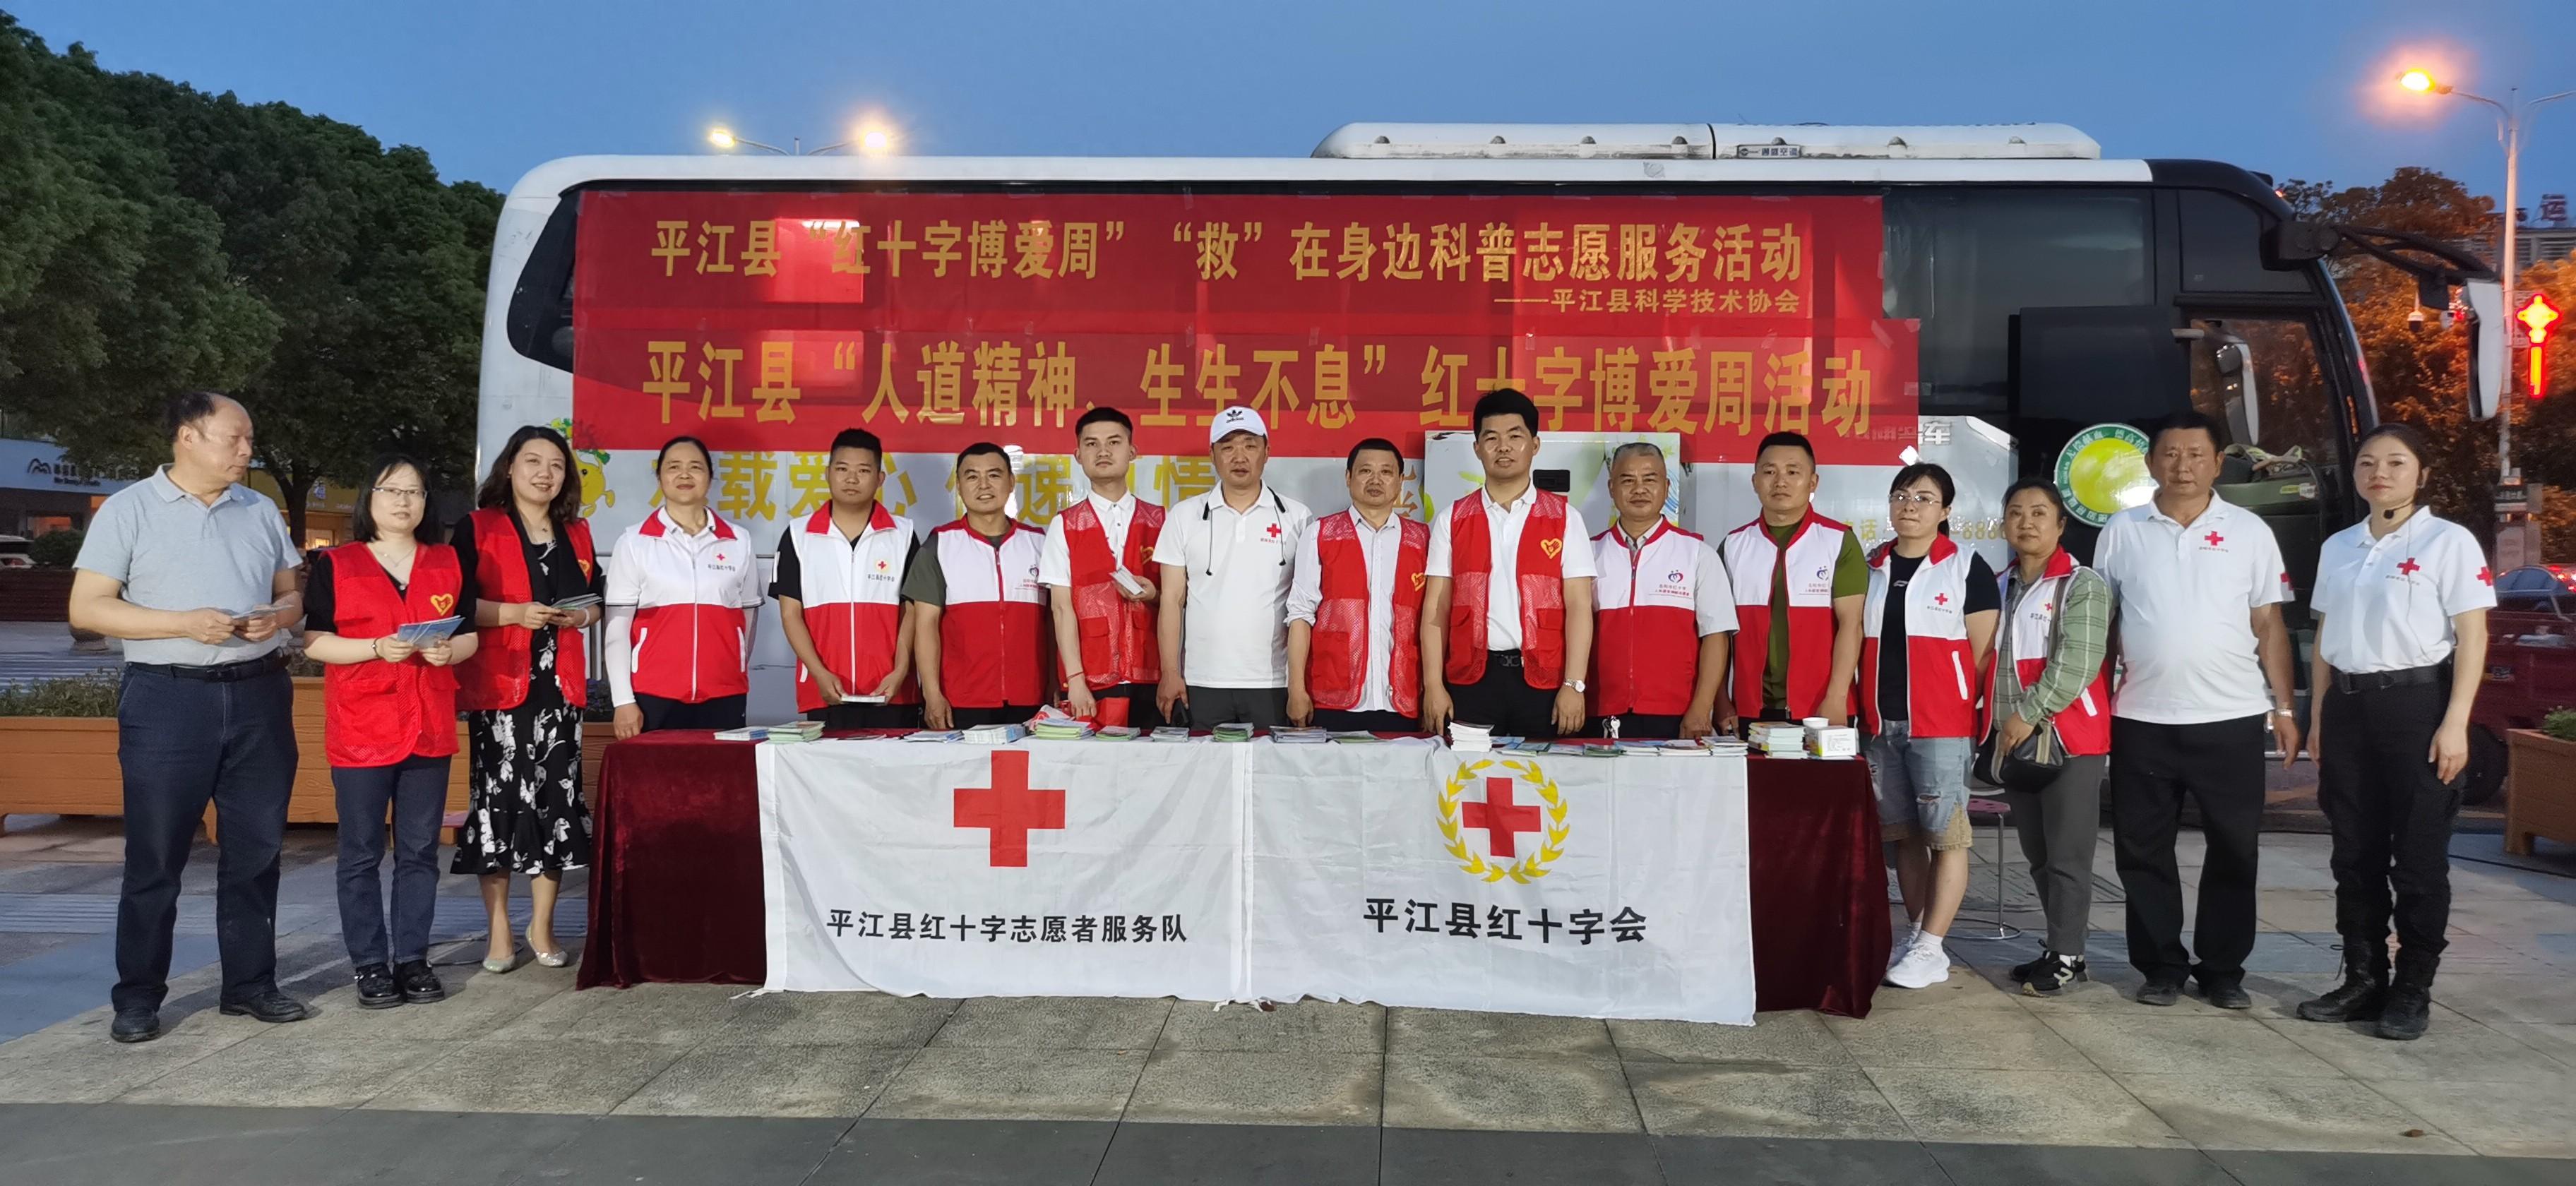 平江县科协联合举办“红十字博爱周”“救”在你身边科普志愿活动